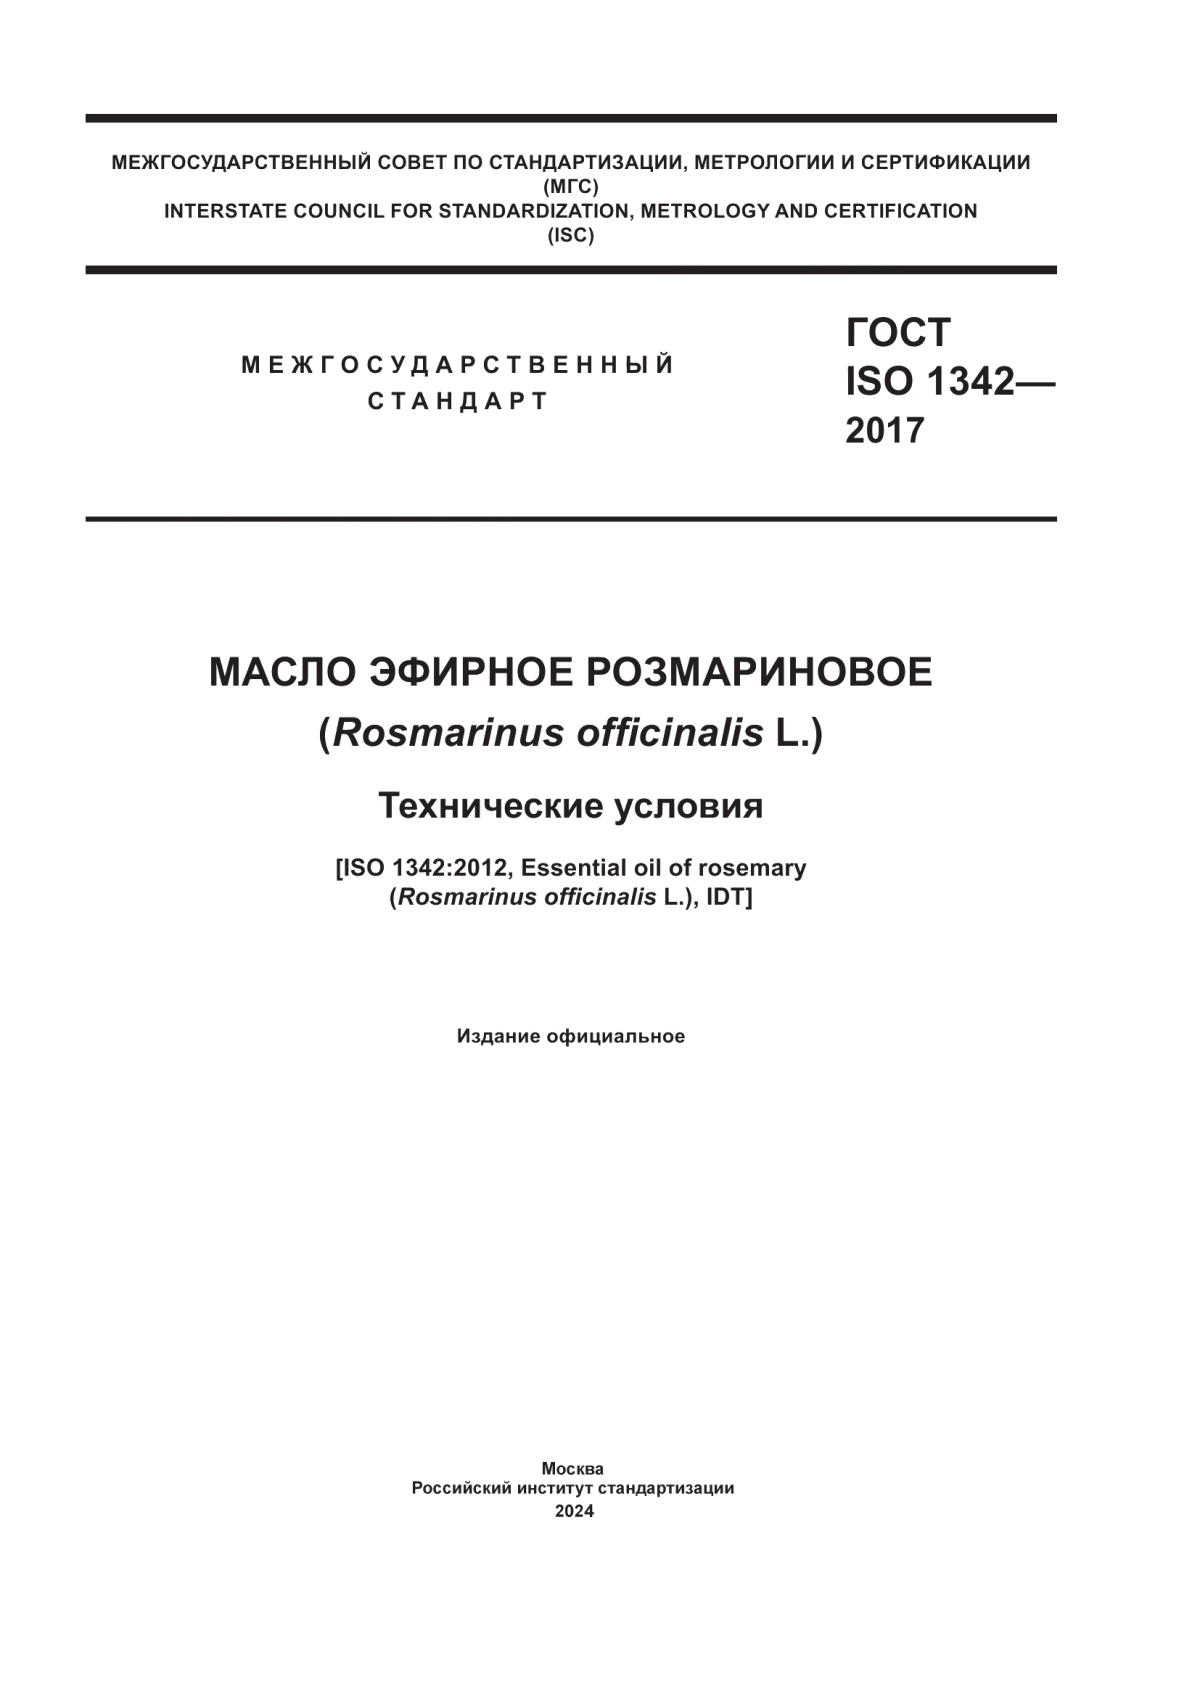 ГОСТ ISO 1342-2017 Масло эфирное розмариновое (Rosmarinus officinalis L.). Технические условия